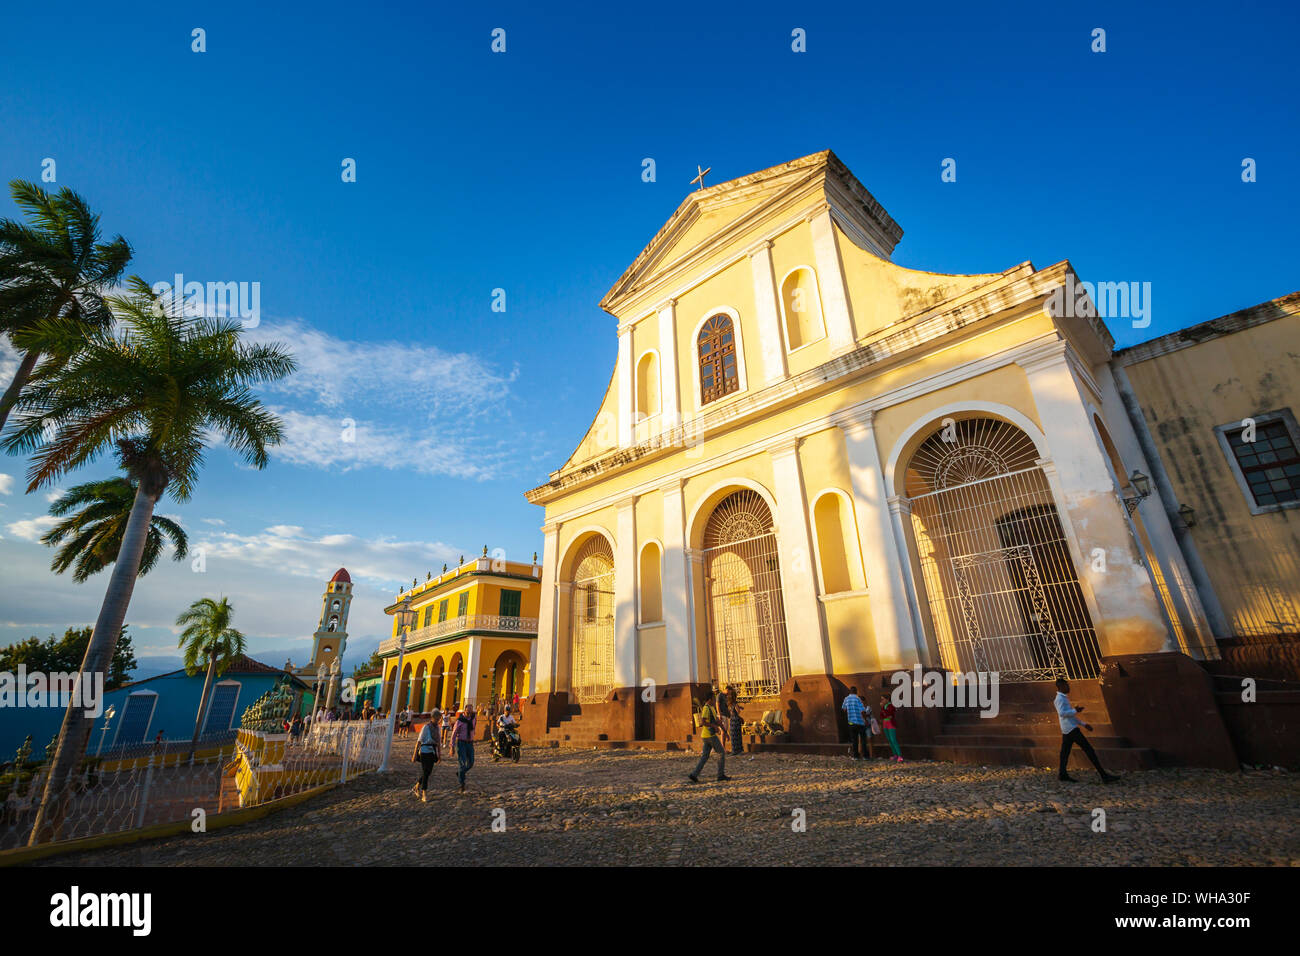 Die Kirche der Heiligen Dreifaltigkeit in der Plaza Major in Trinidad, UNESCO-Weltkulturerbe, Trinidad, Kuba, Karibik, Karibik, Zentral- und Lateinamerika Stockfoto